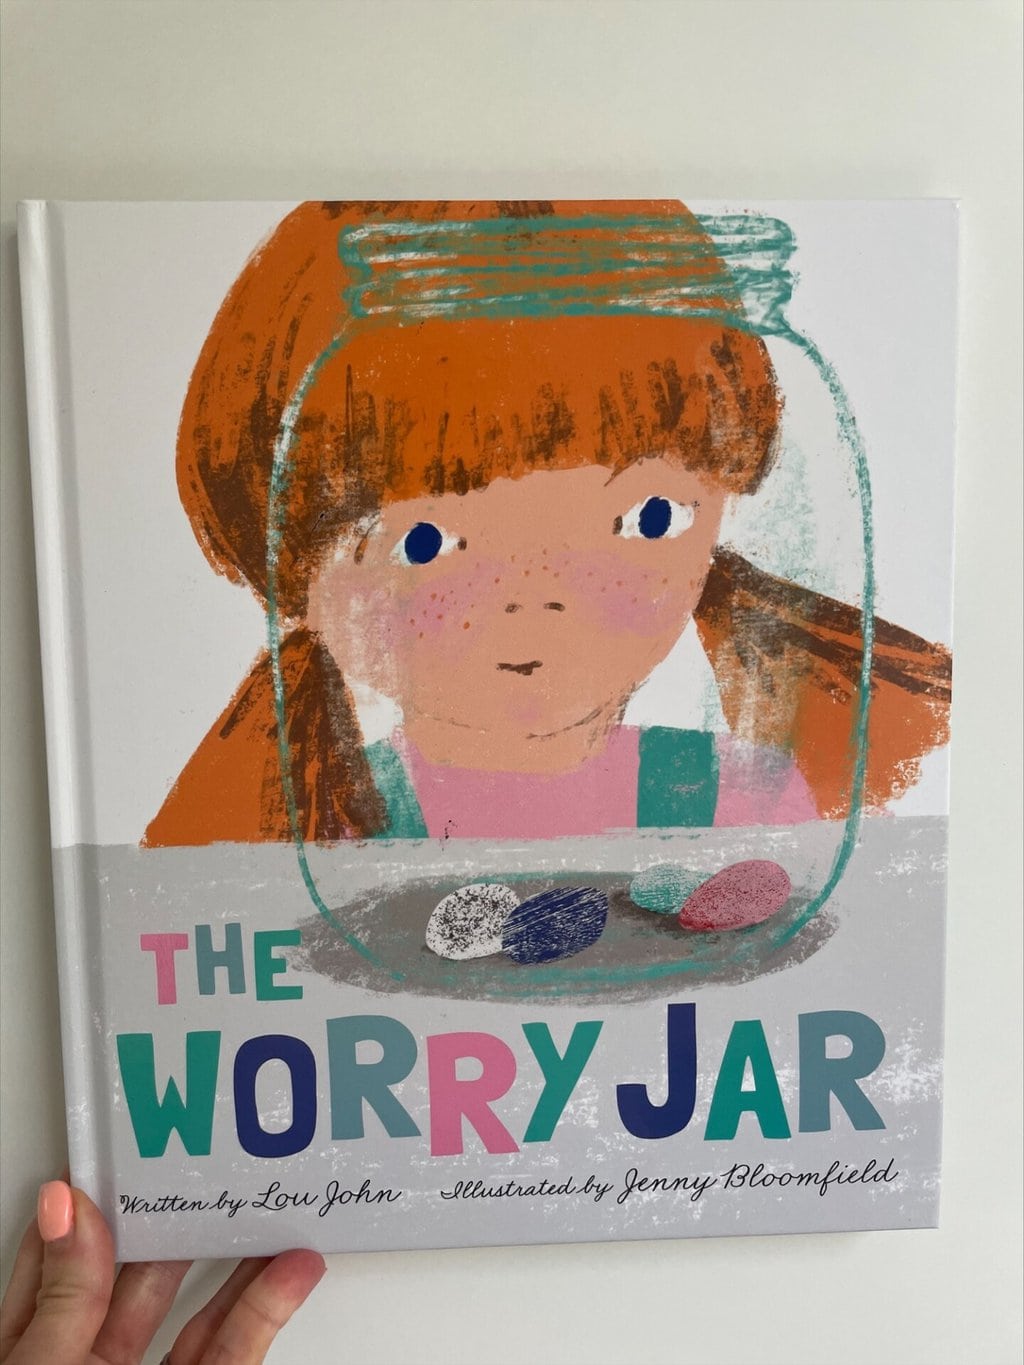 The Worry Jar – Lou John